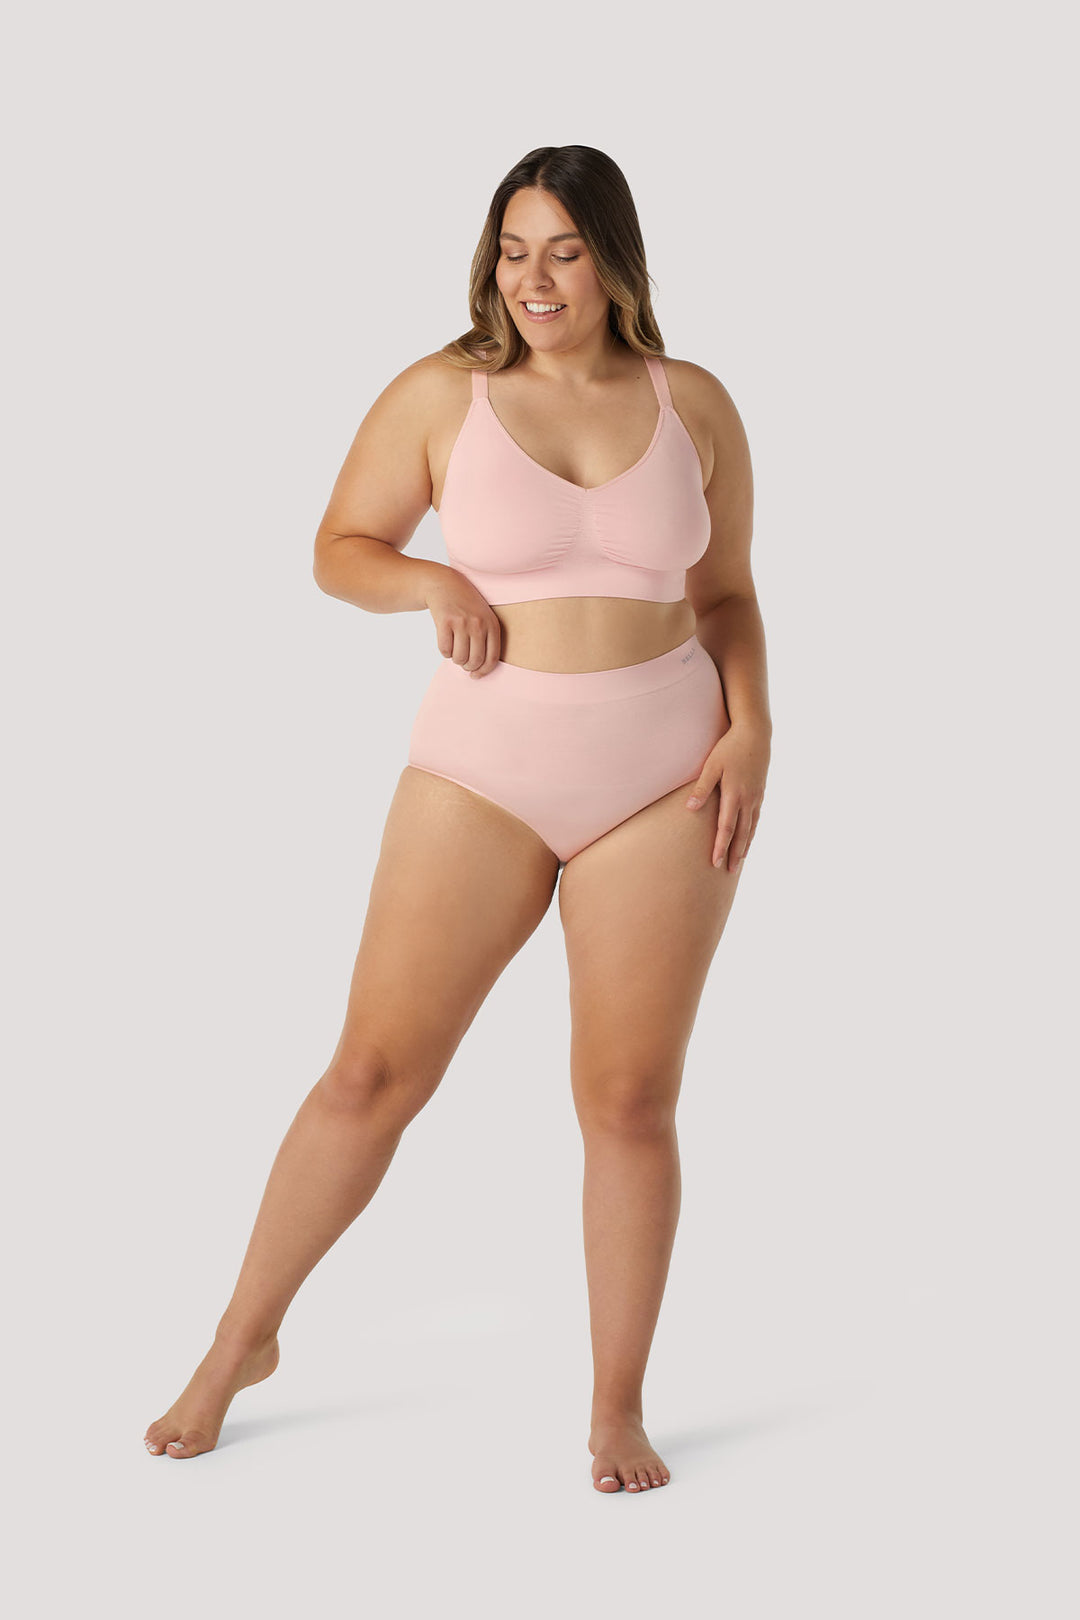 Women's Matching Underwear Sets – BELLA BODIES AUSTRALIA